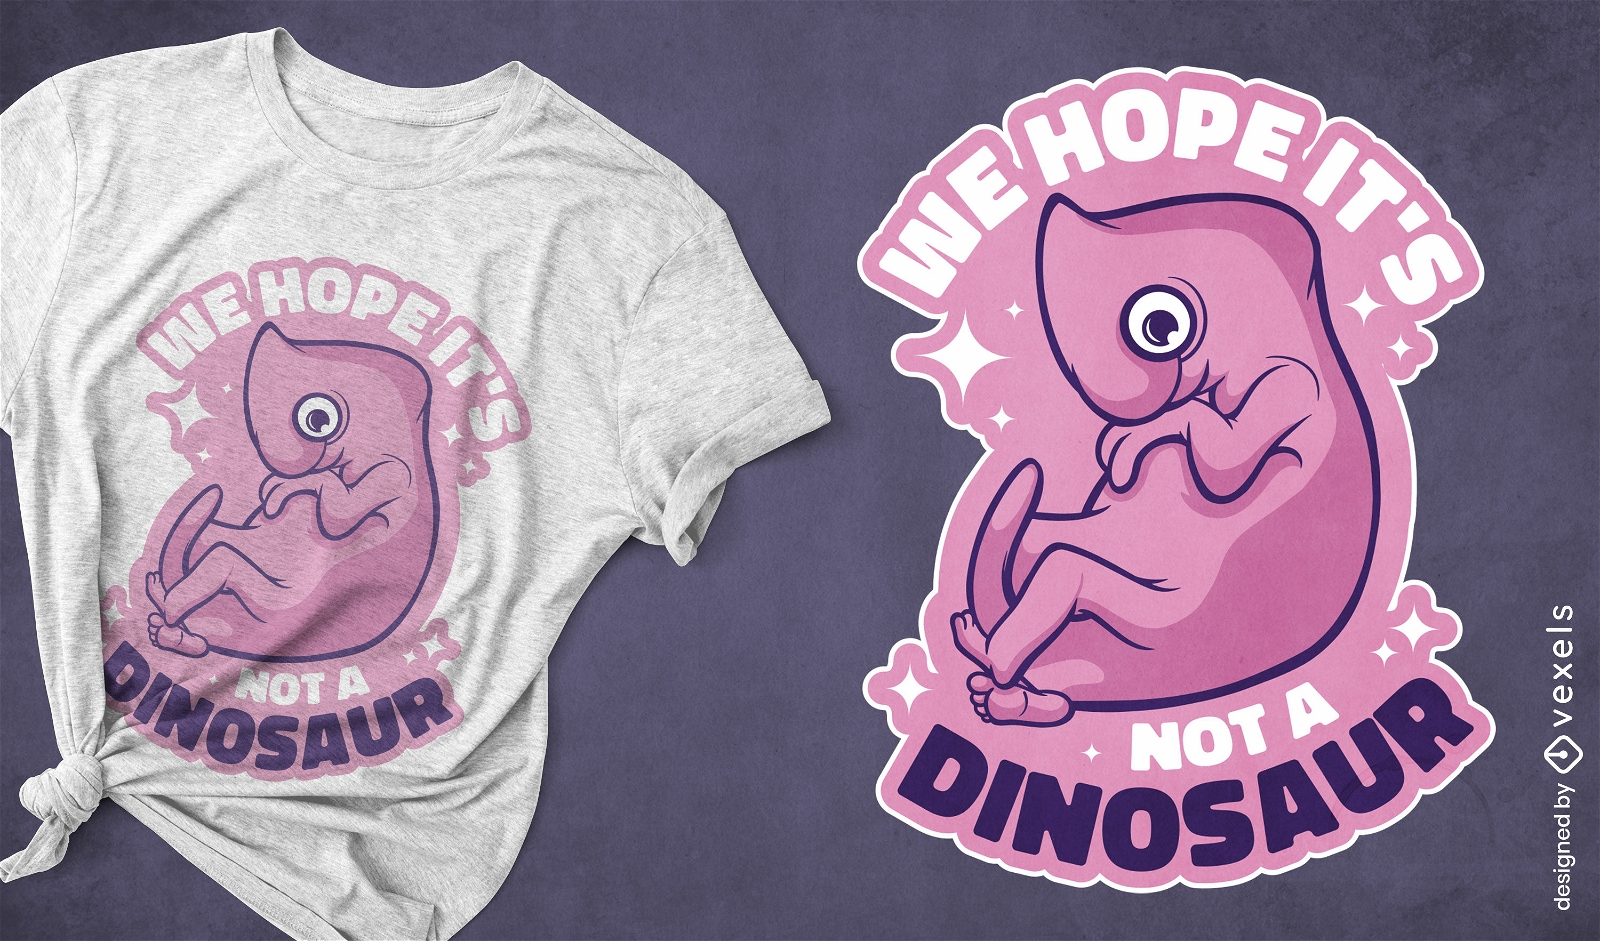 Dise?o de camiseta de embri?n de dinosaurio.